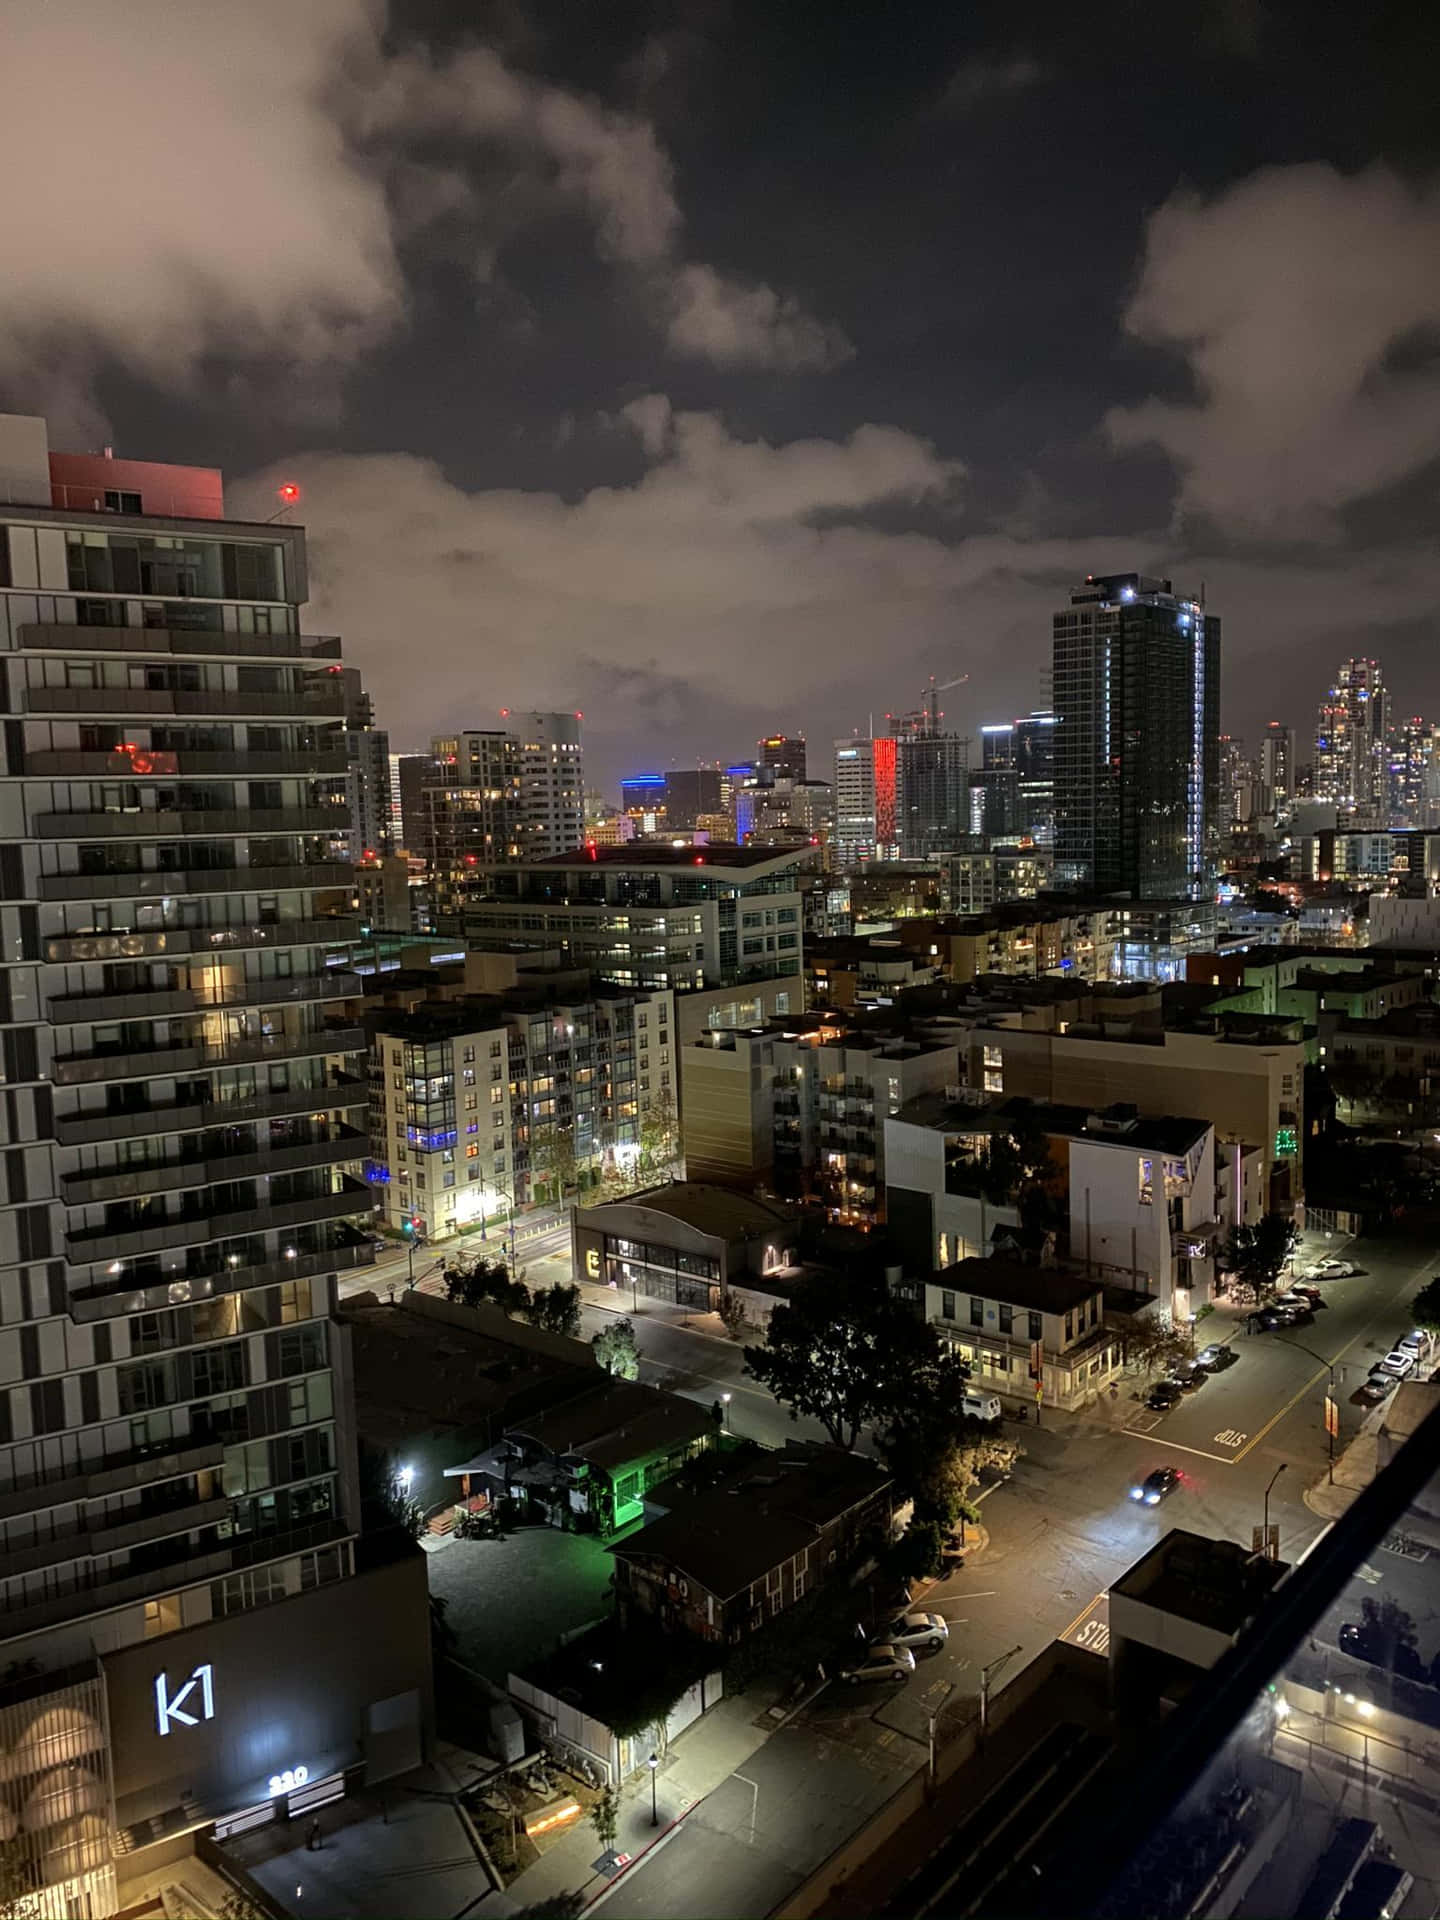 Et udsigt til byen om natten fra en lejlighedsaltan. Wallpaper